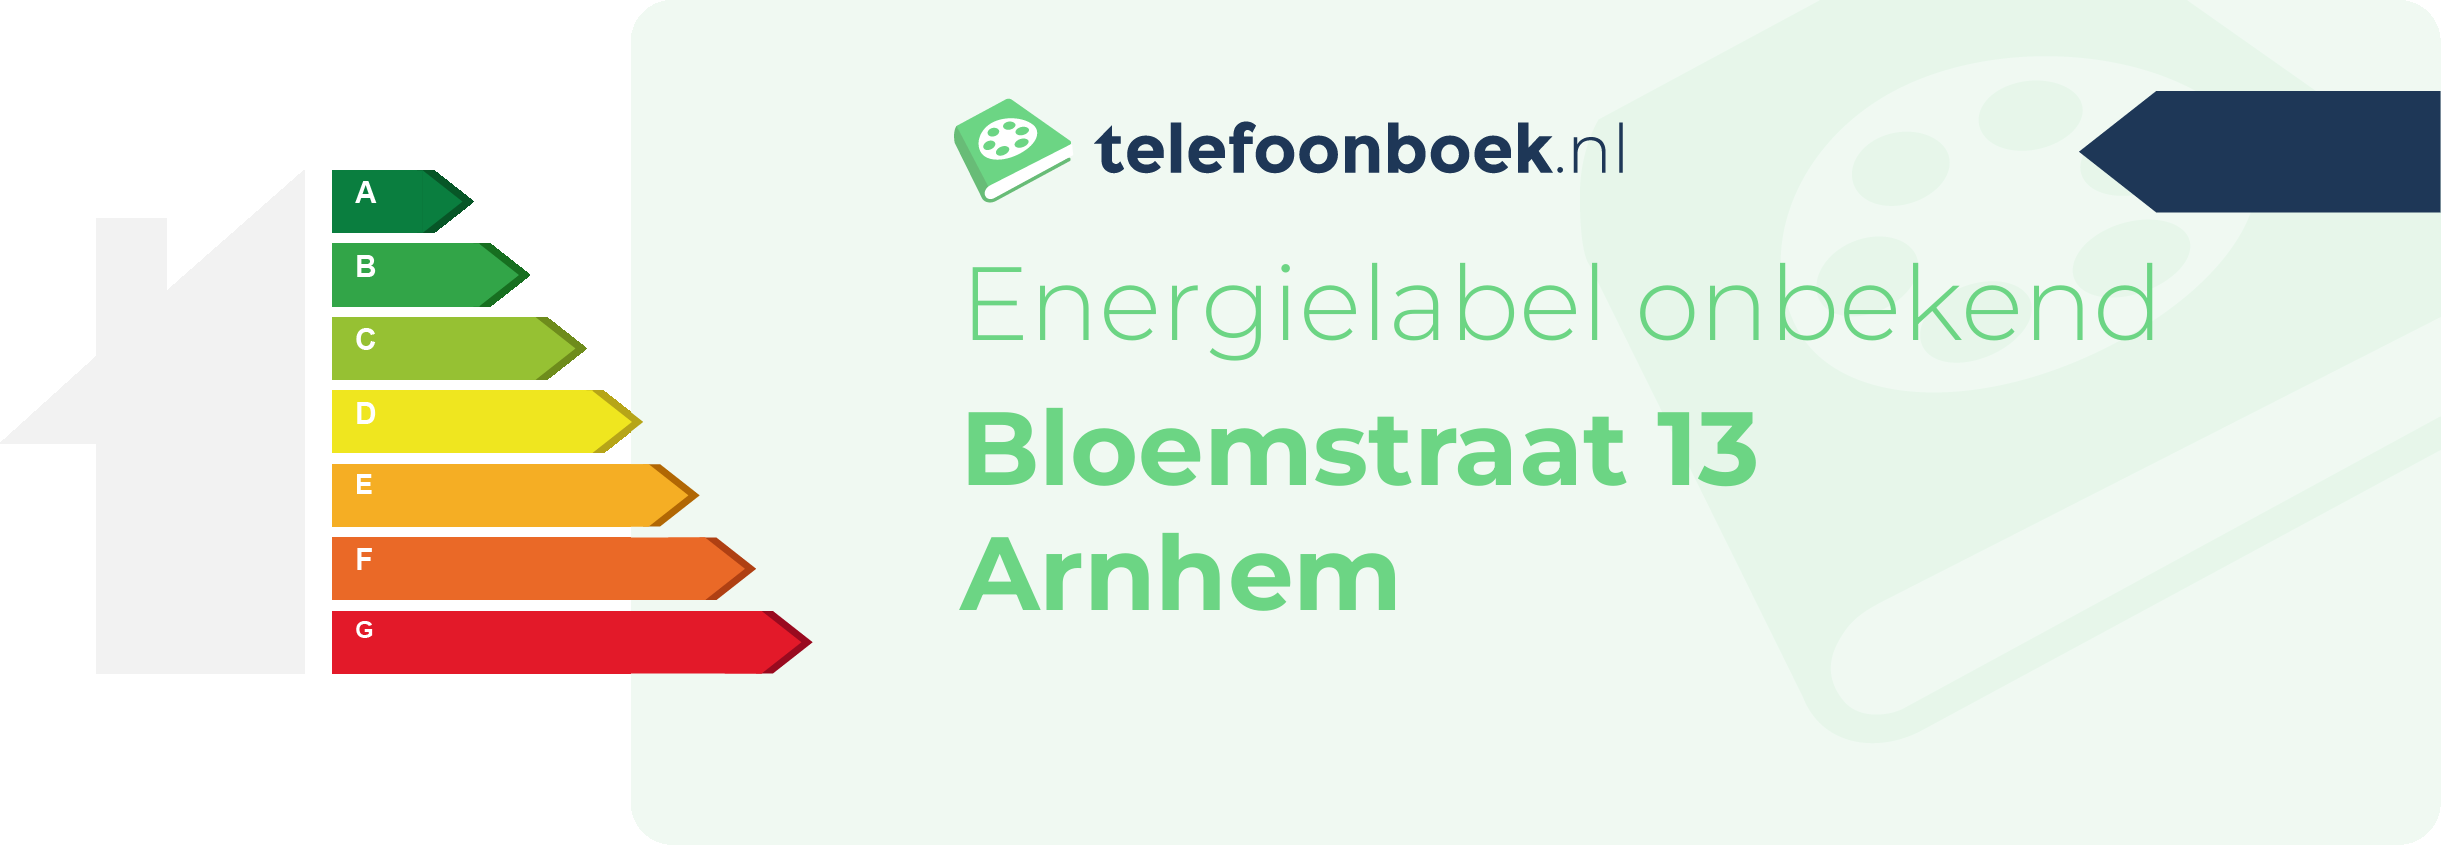 Energielabel Bloemstraat 13 Arnhem